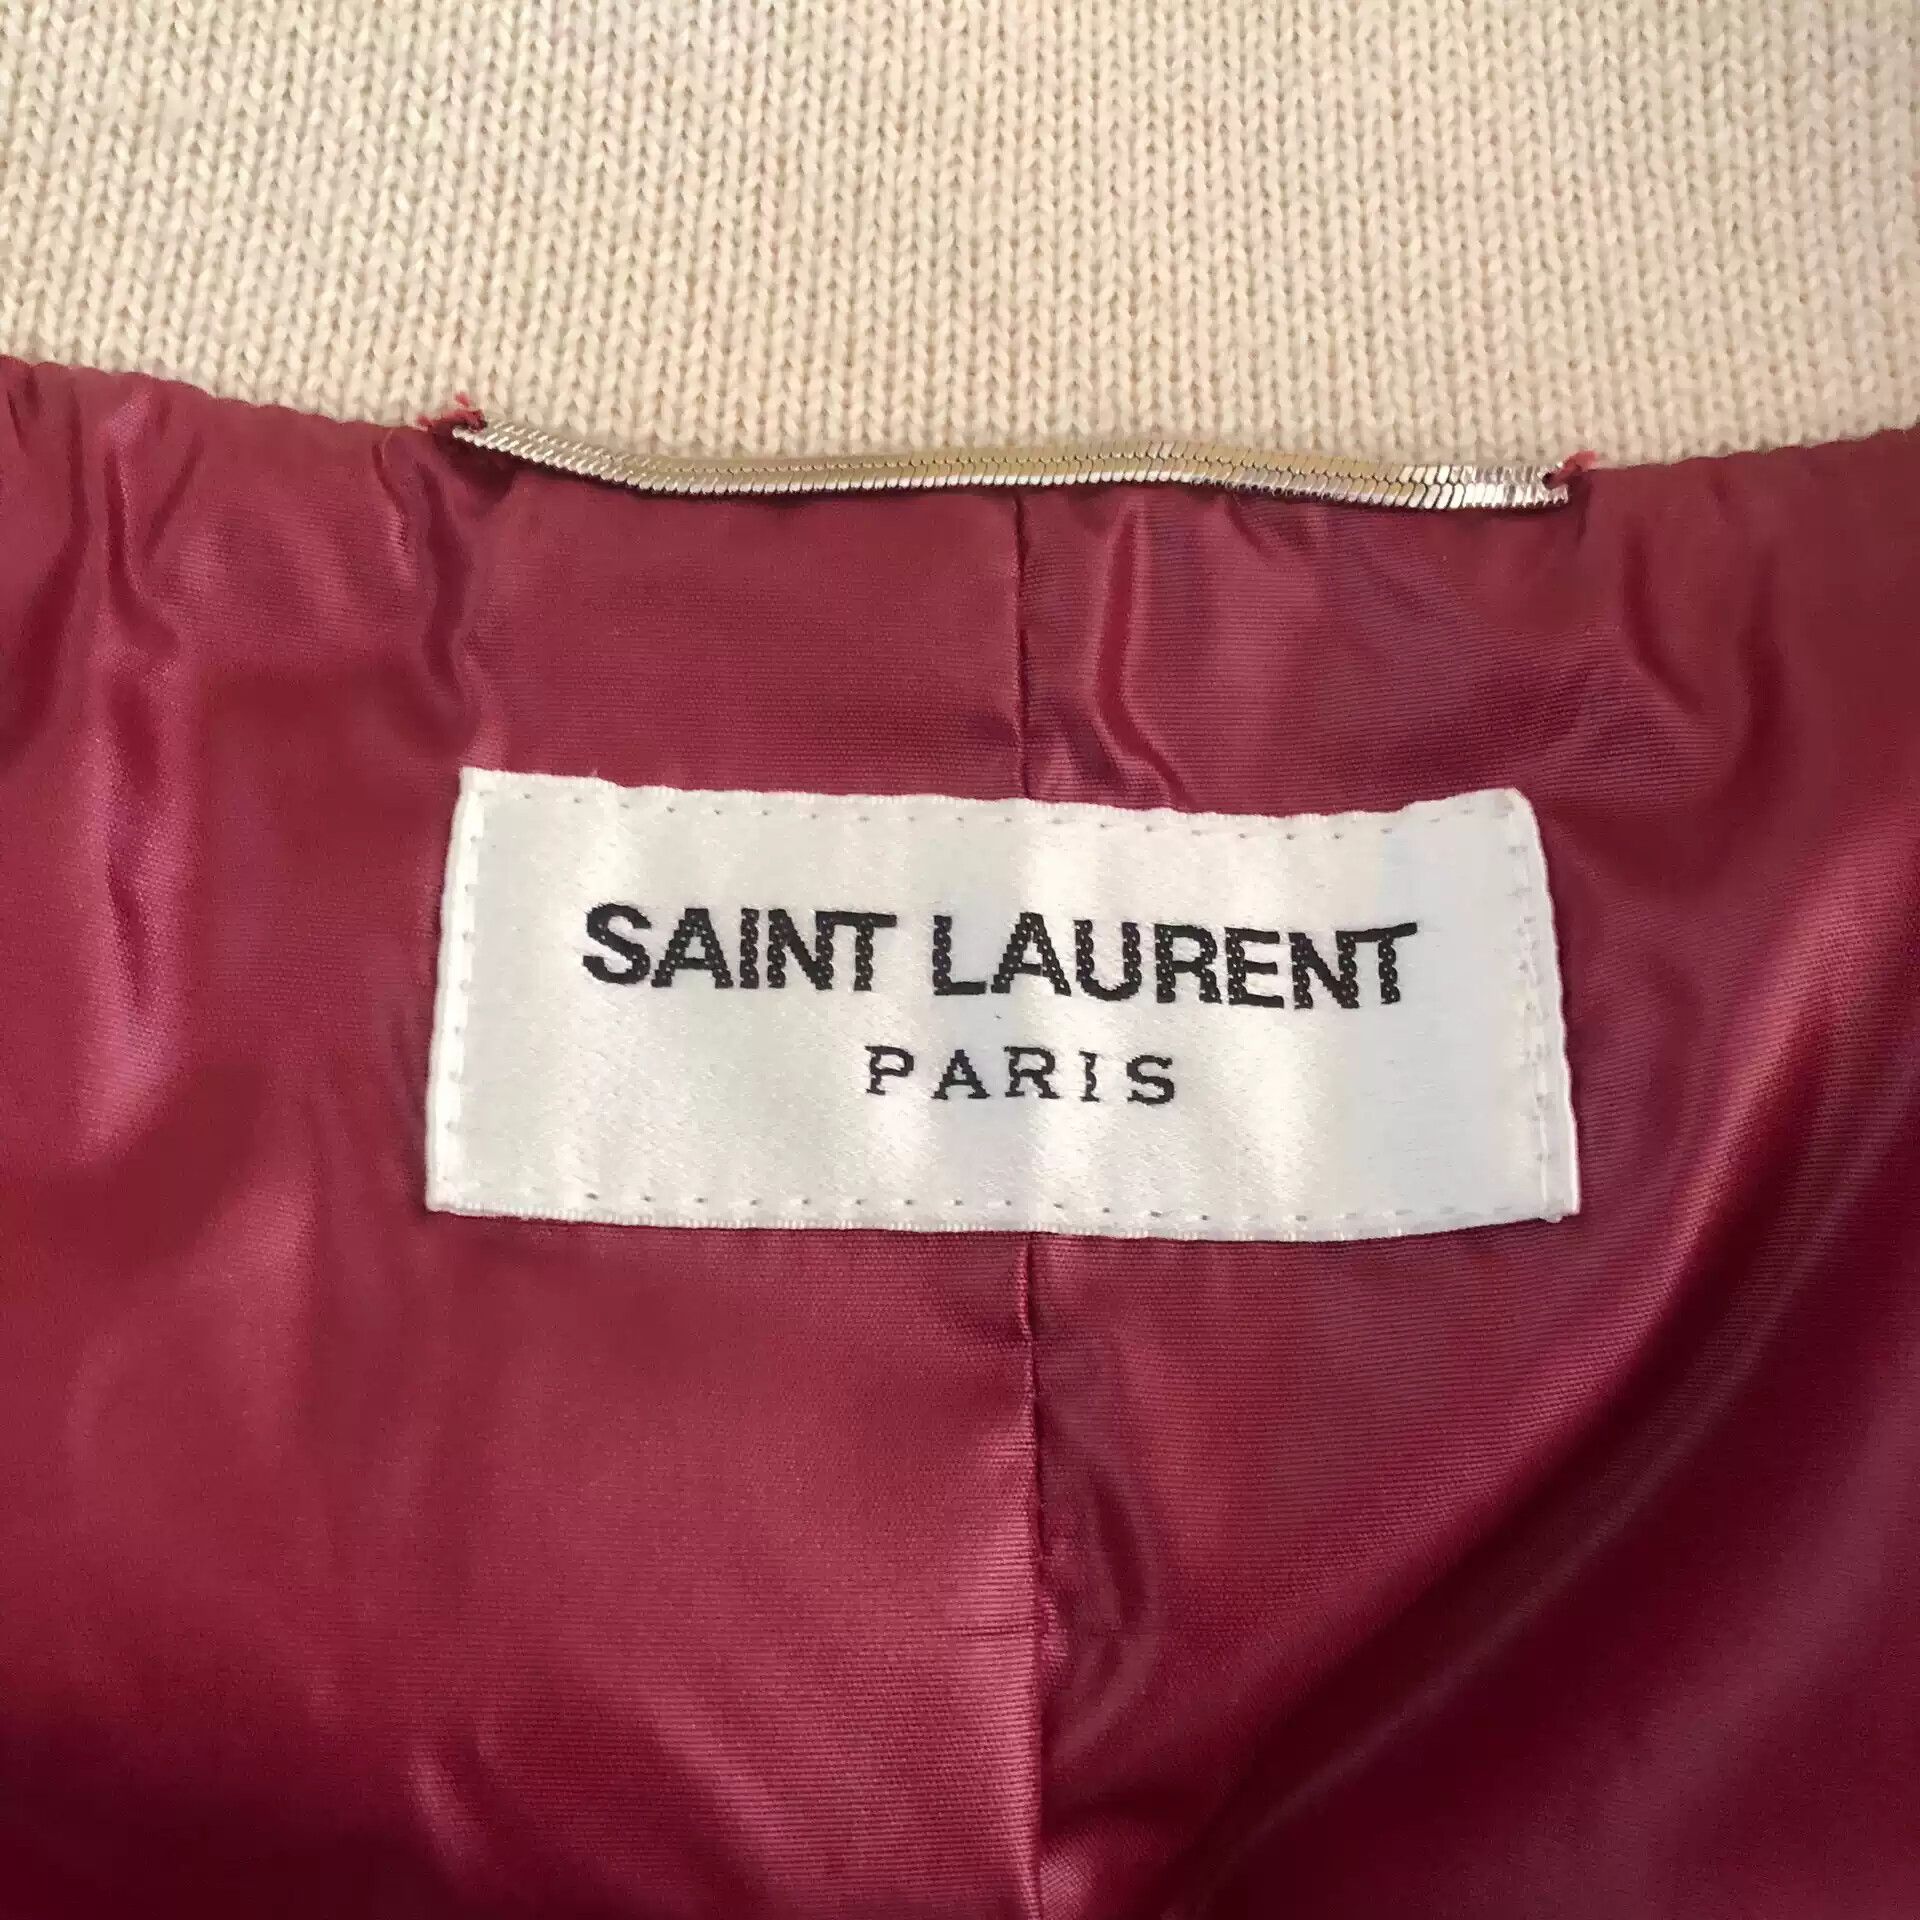 Saint Laurent Paris saint laurent Burgundy wool and nylon baseball jacket Size US S / EU 44-46 / 1 - 2 Preview